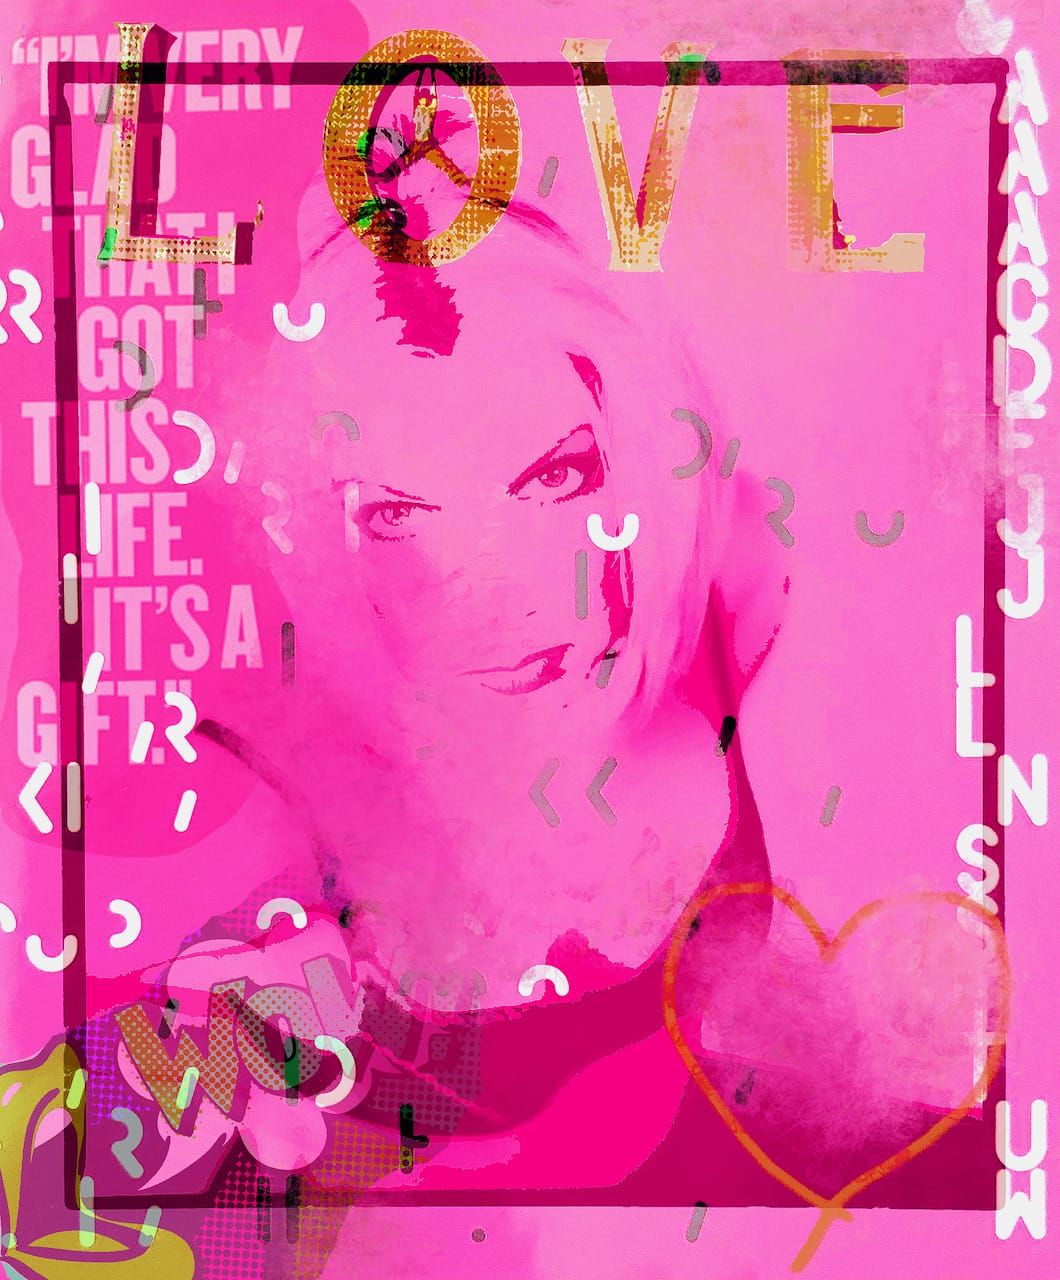 Ute Bruno abstrakte Foto Collage Überlagerung Frauen Portrait blond Popart pink und Typographie love